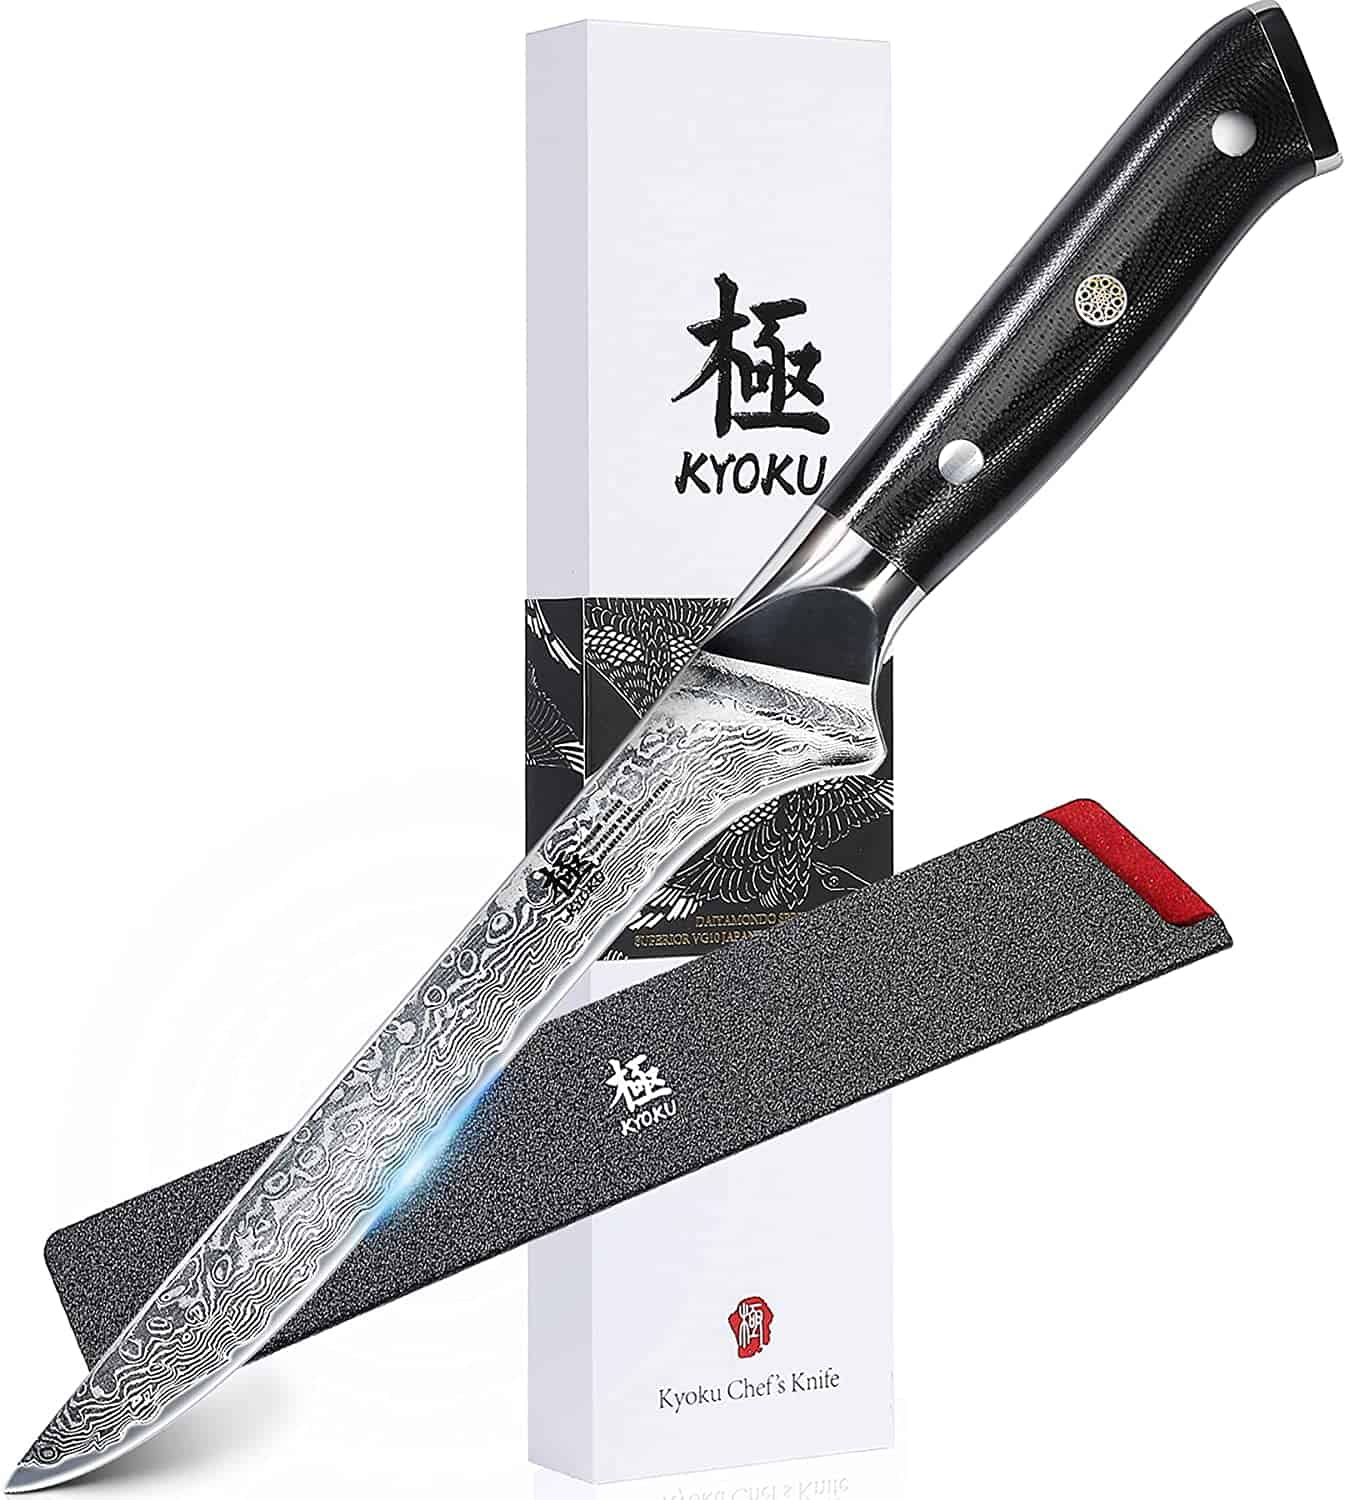 Cyllell esgyrniad dur VG-10 orau- KYOKU Boning Knife 7 Shogun Series